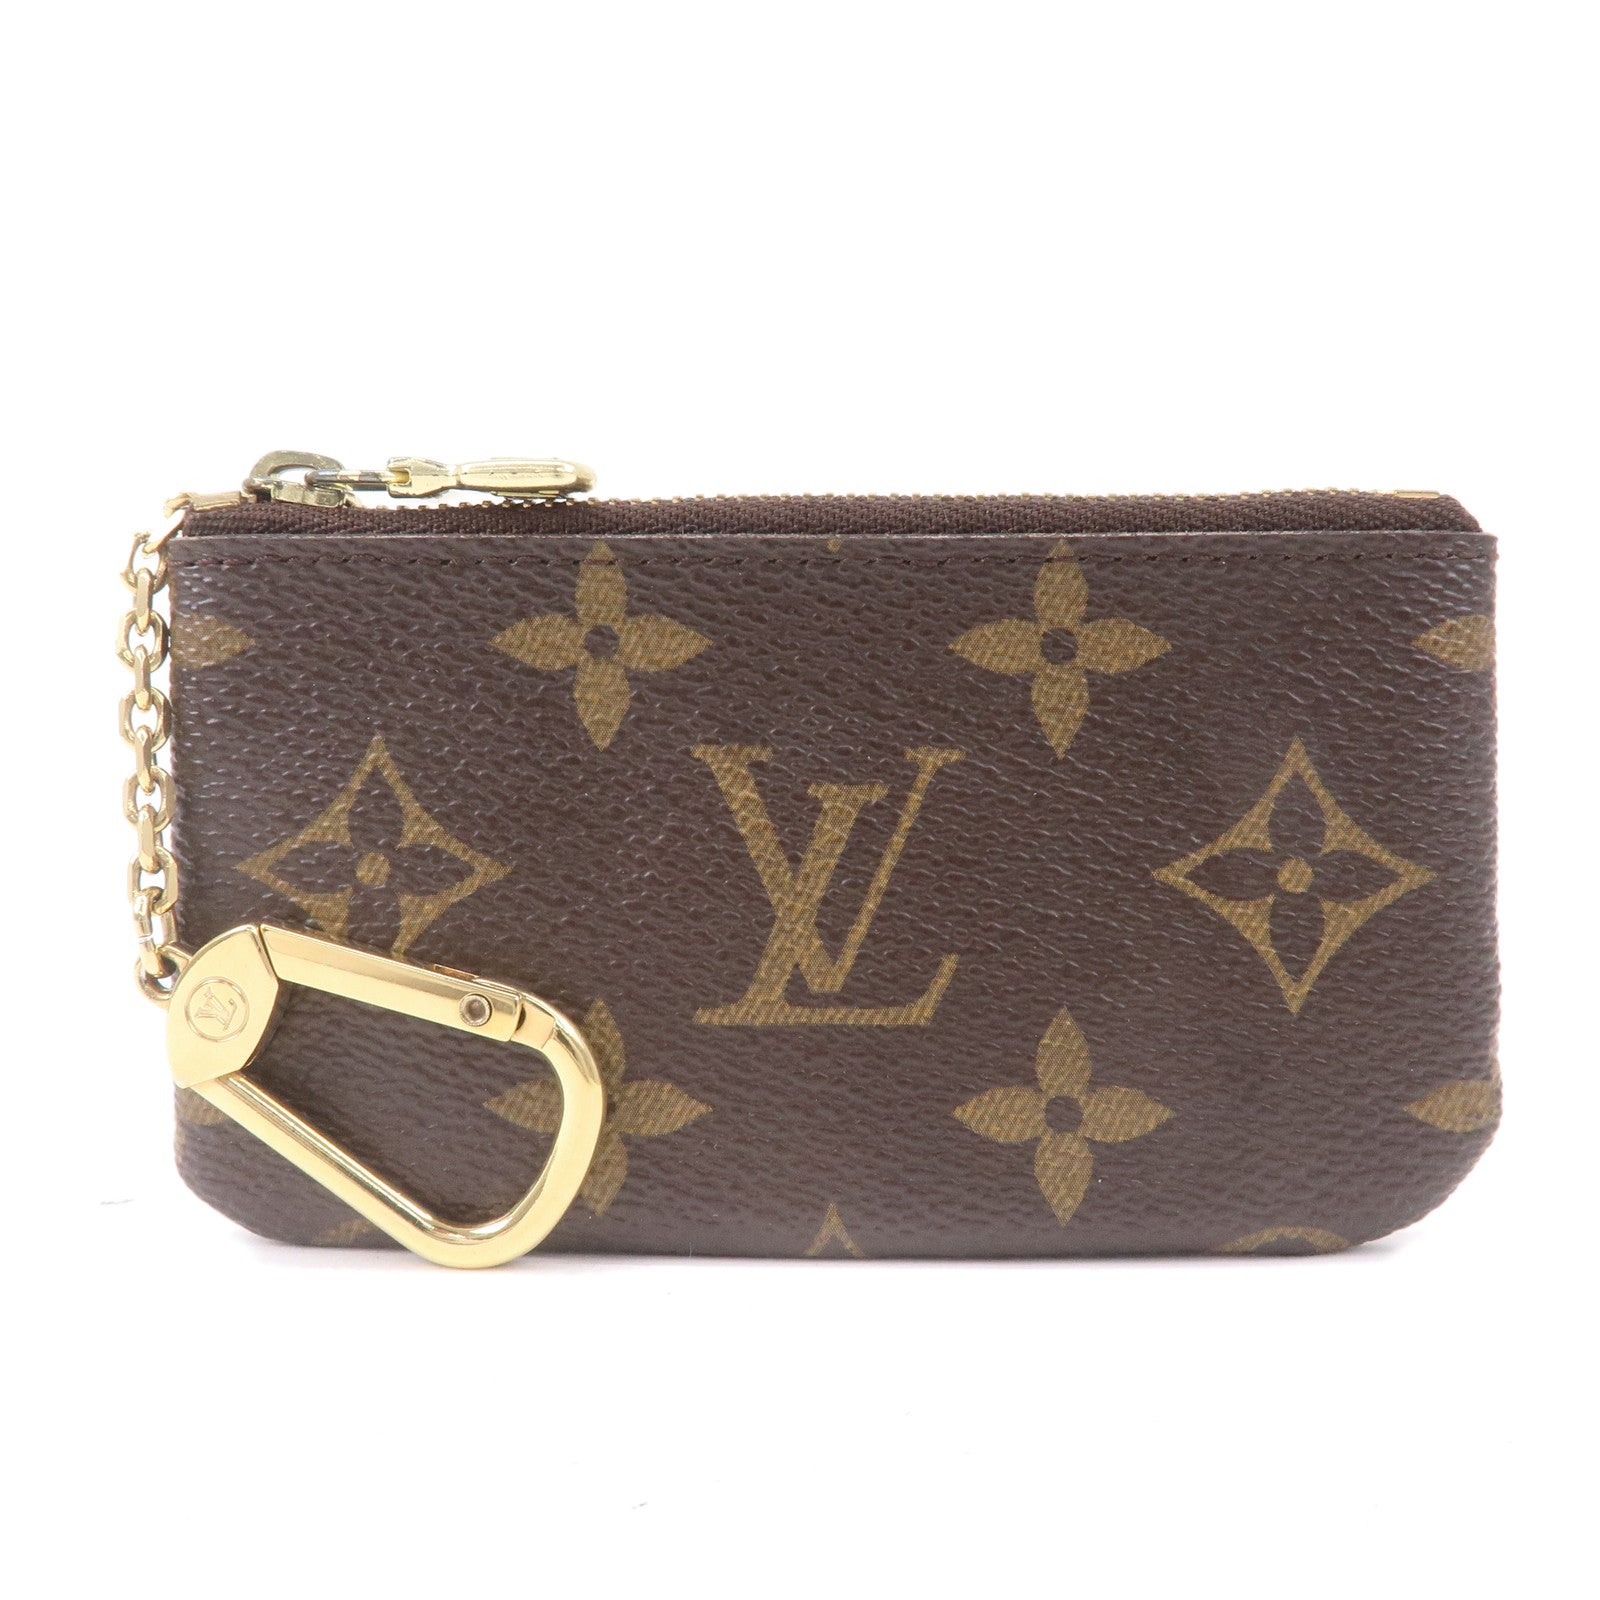 Authentic Louis Vuitton Key Cles Vernis Monogram 